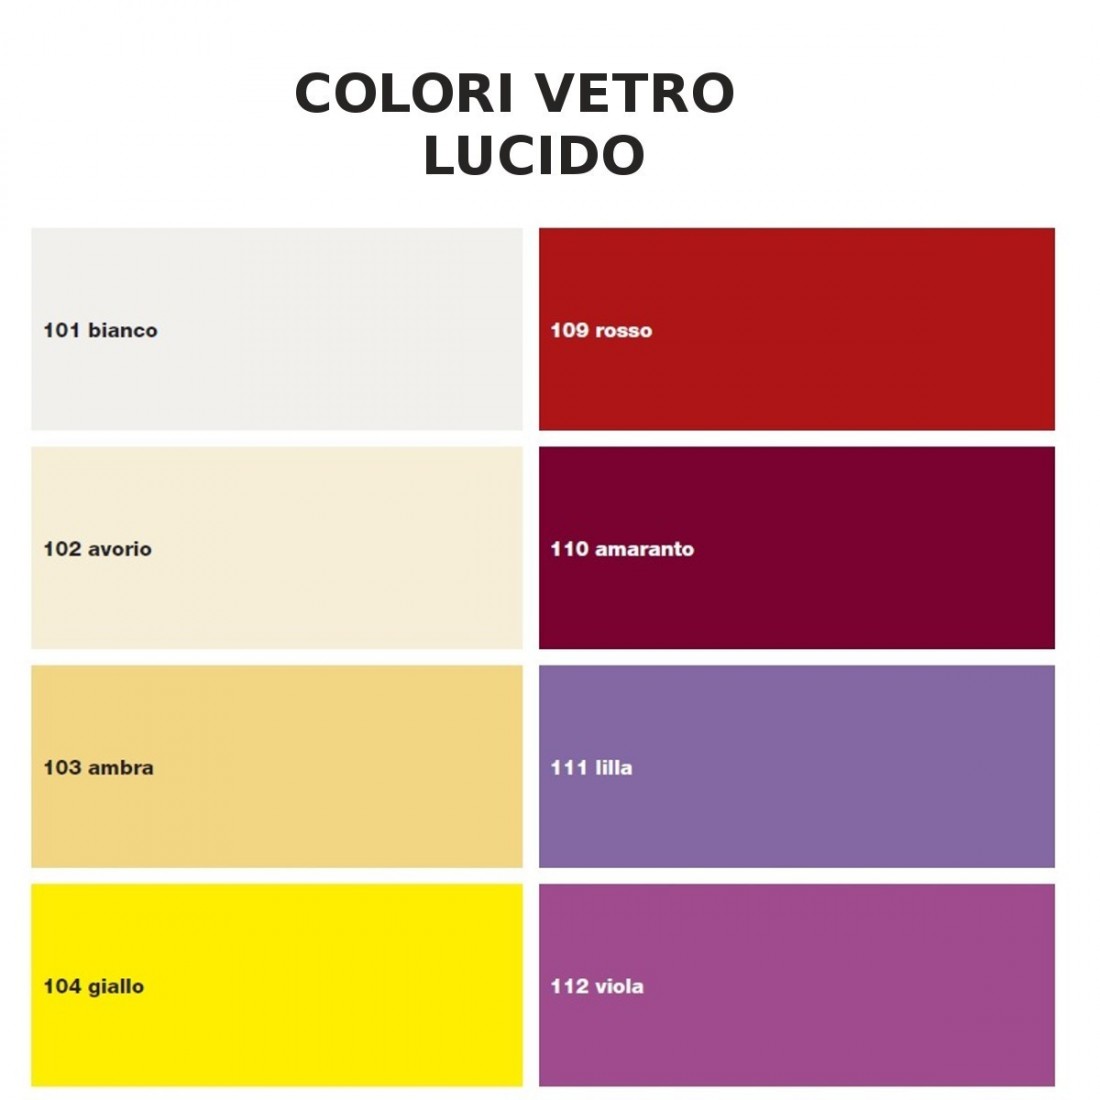 Applique SV-BASIC COLOR 4121 E27 LED 30CM rettangolare moderna lampada parete soffitto vetro colorato interno